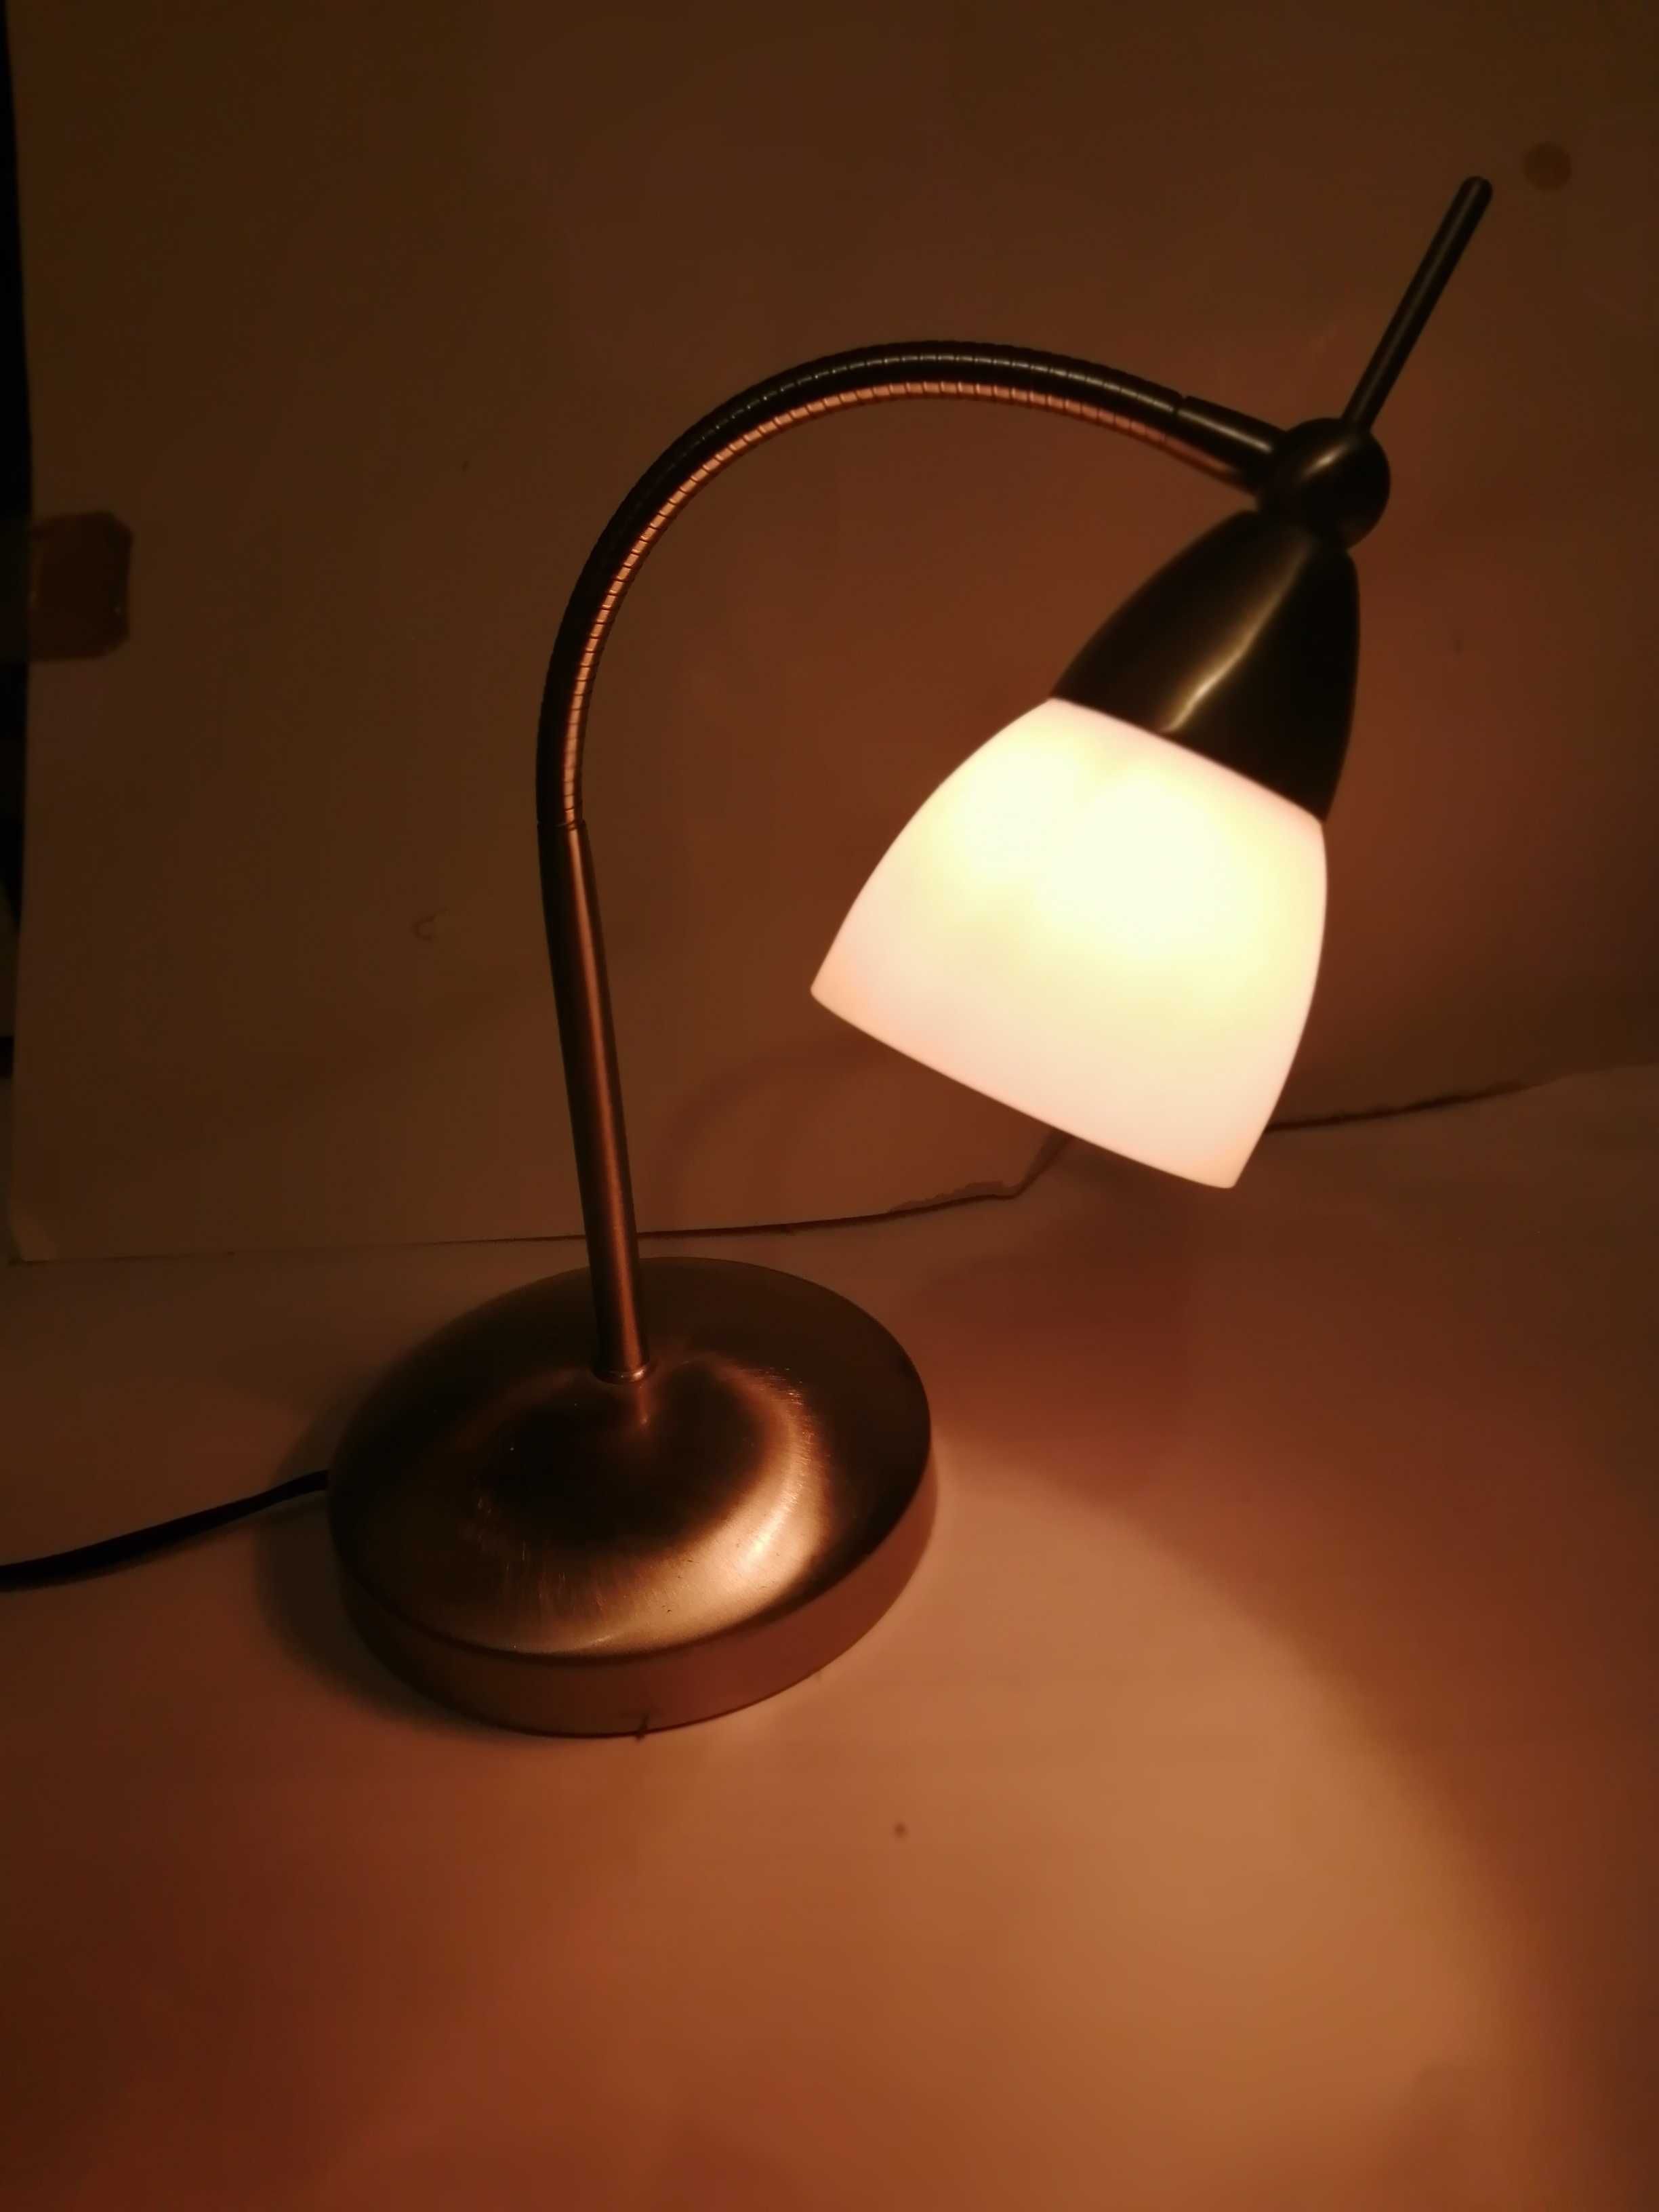 Lampka zapala się na dotyk z kloszem